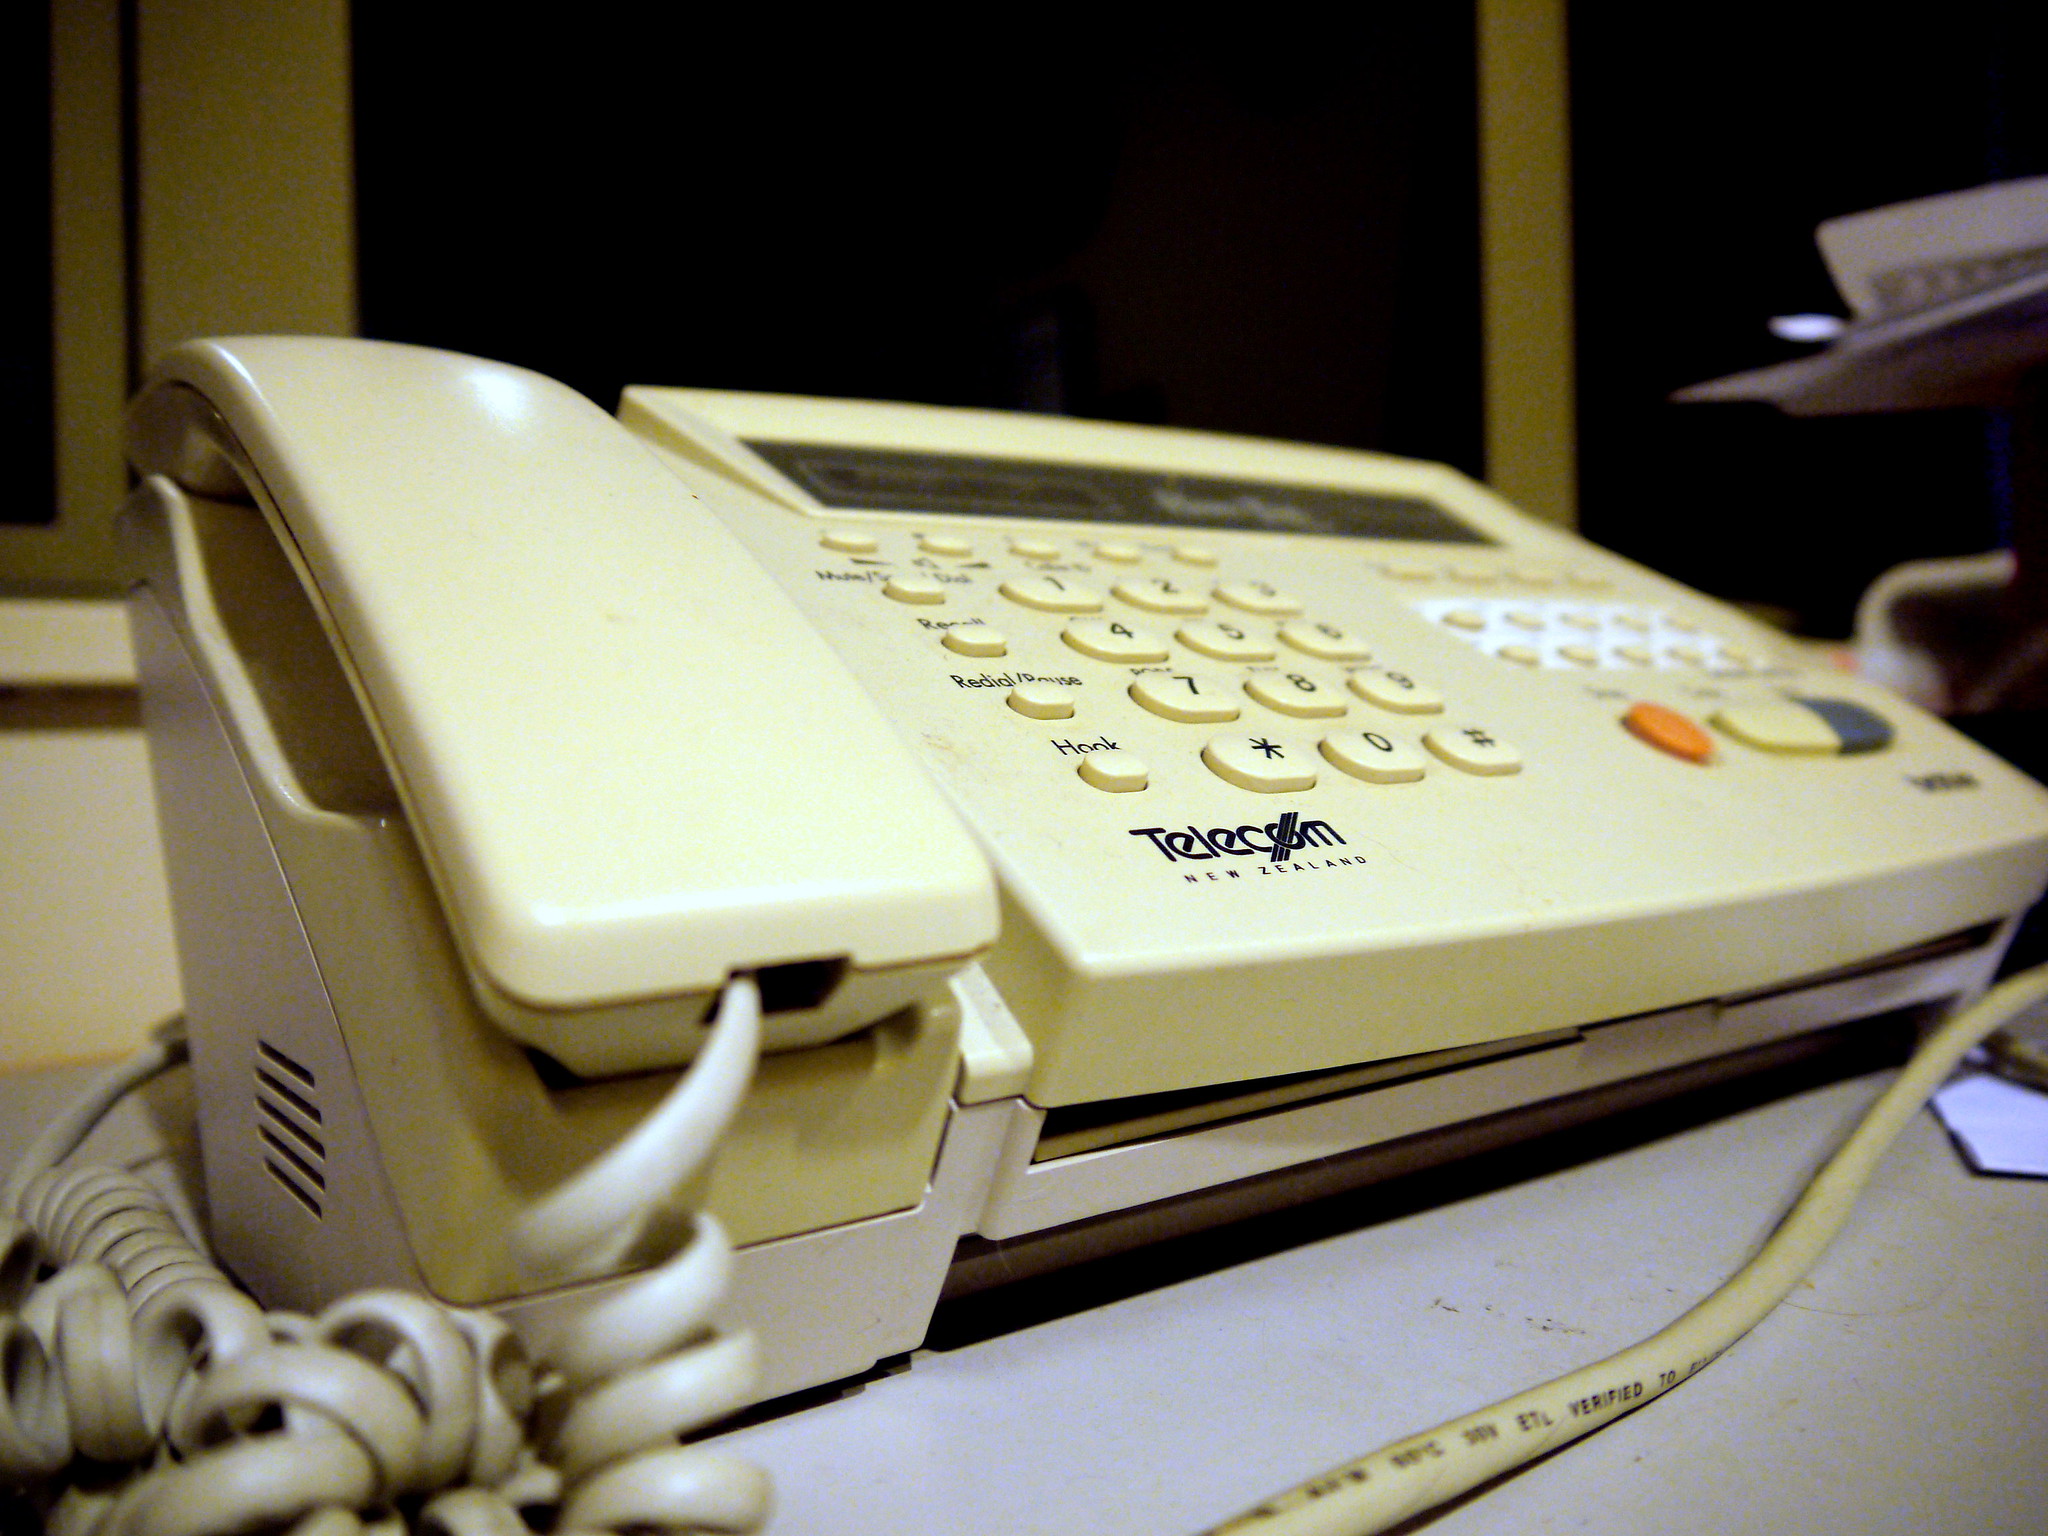 Le fax accélère le développement des échanges mais, en tant qu'objet, il&nbsp;tend à disparaître au profit du fax Internet. © Yortw, Flickr, CC by 2.0